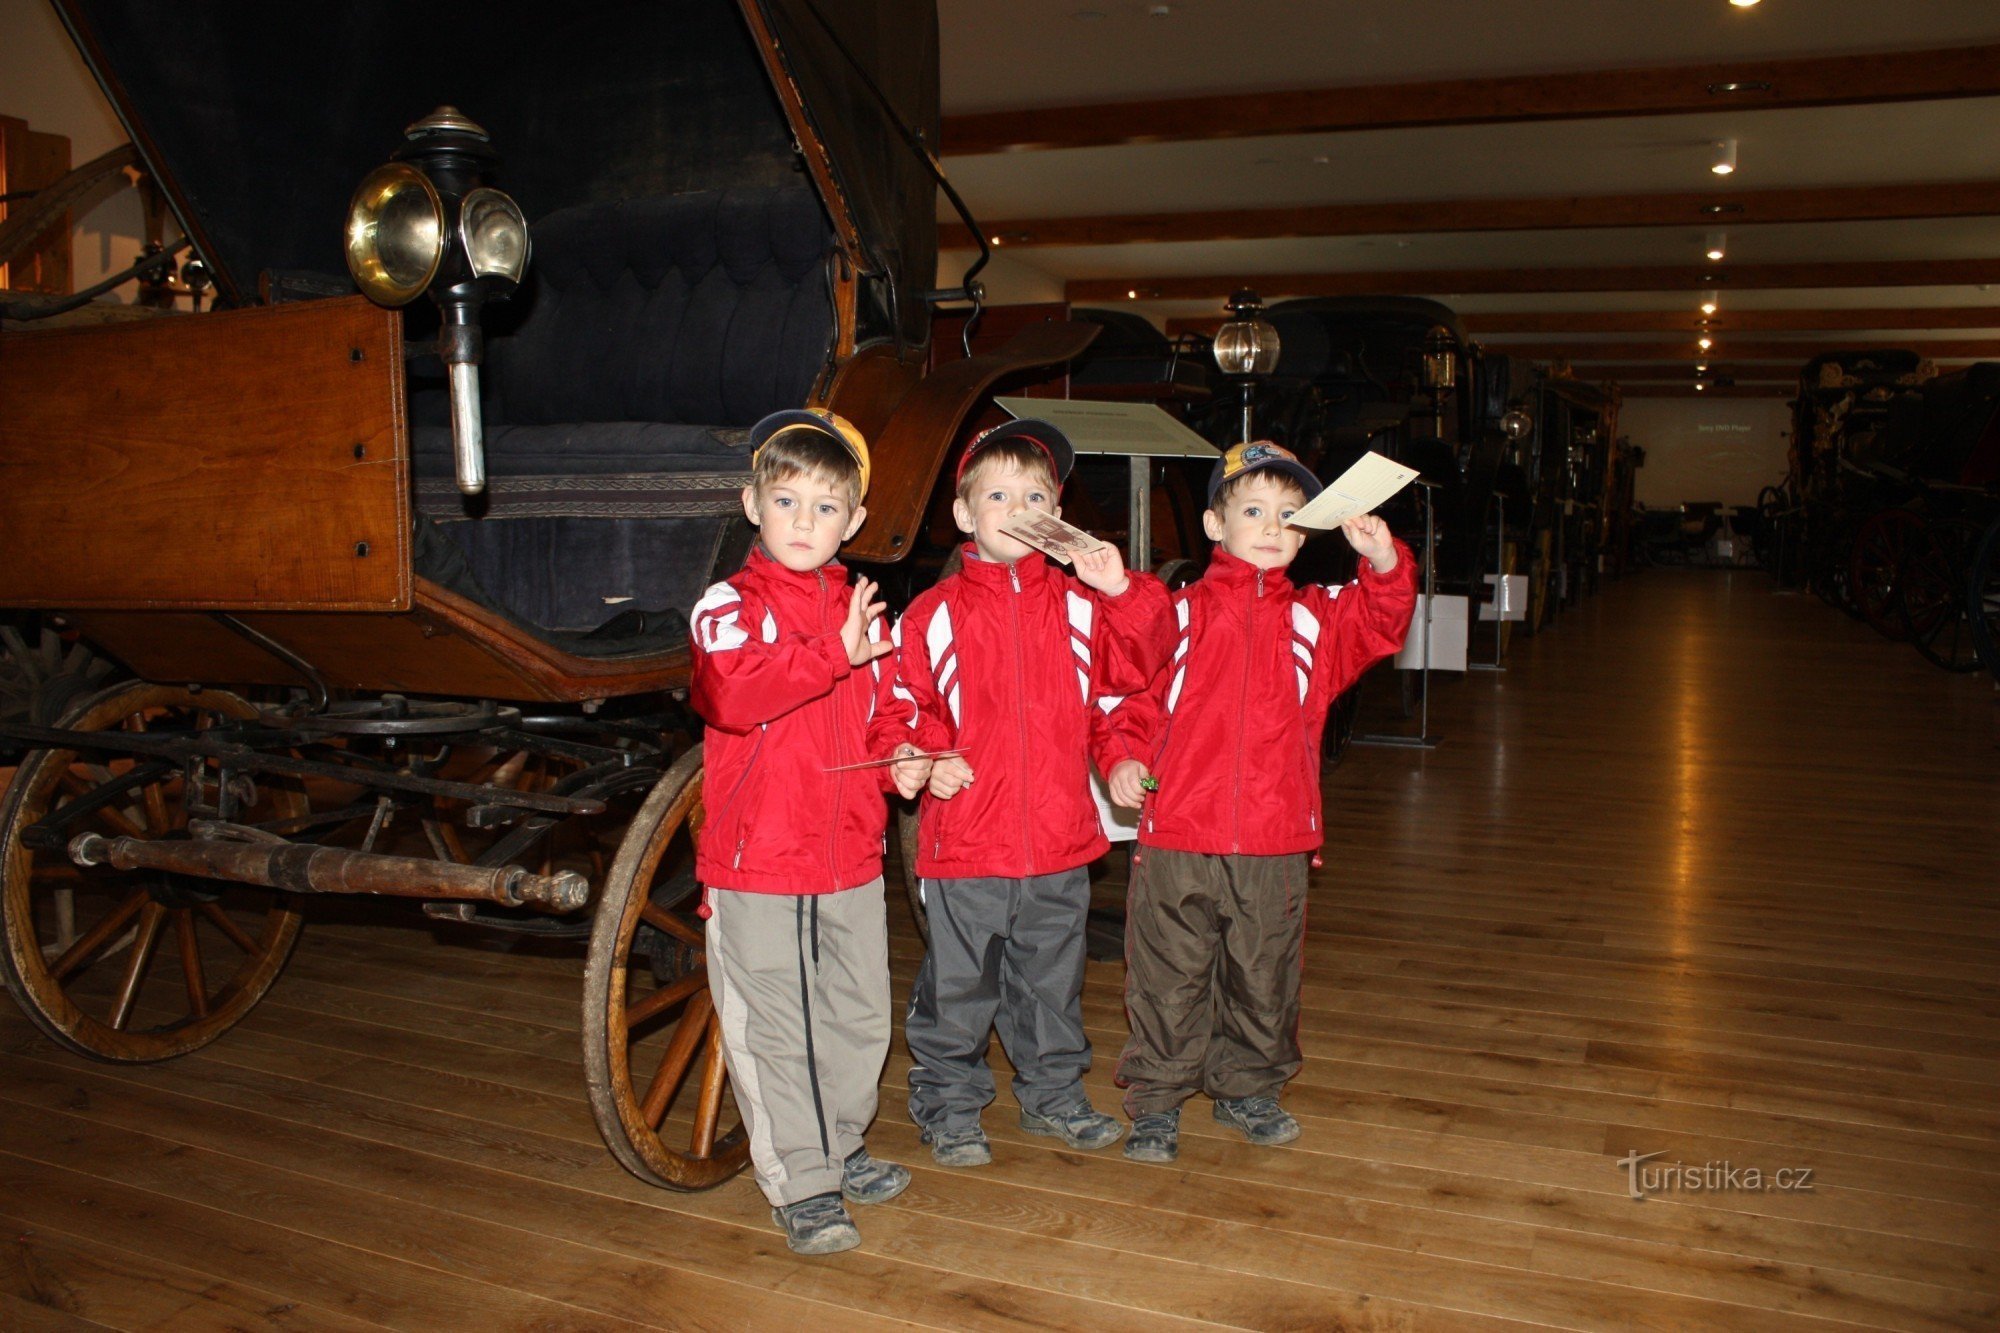 Drieling, jongens Pája, Ráďa en Míša in het koetsenmuseum